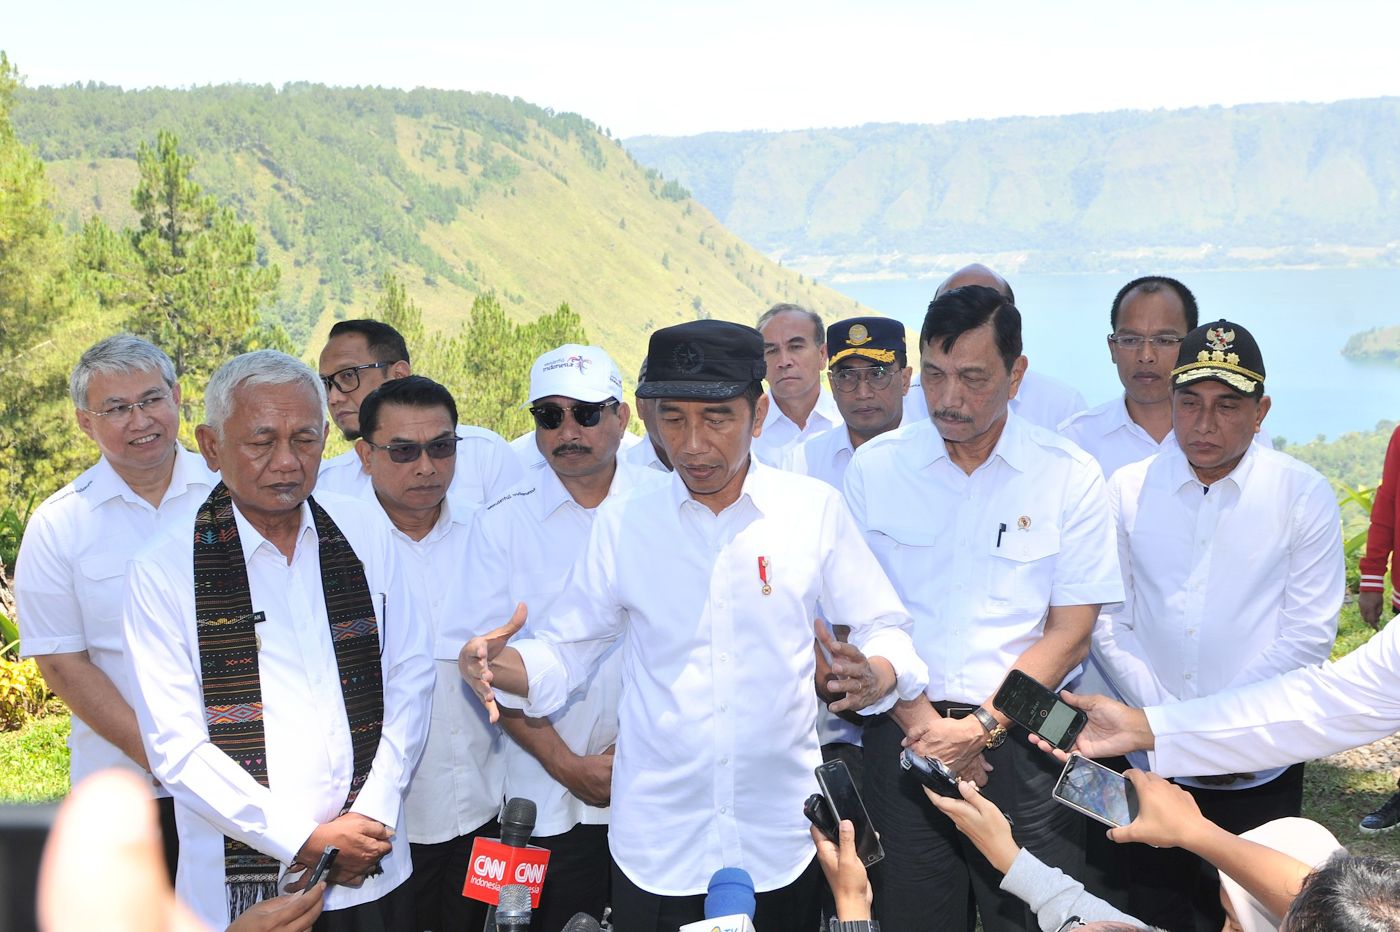 Janji Sampaikan Agustus, Presiden Jokowi: Ibu Kota Akan Pindah ke Kalimantan